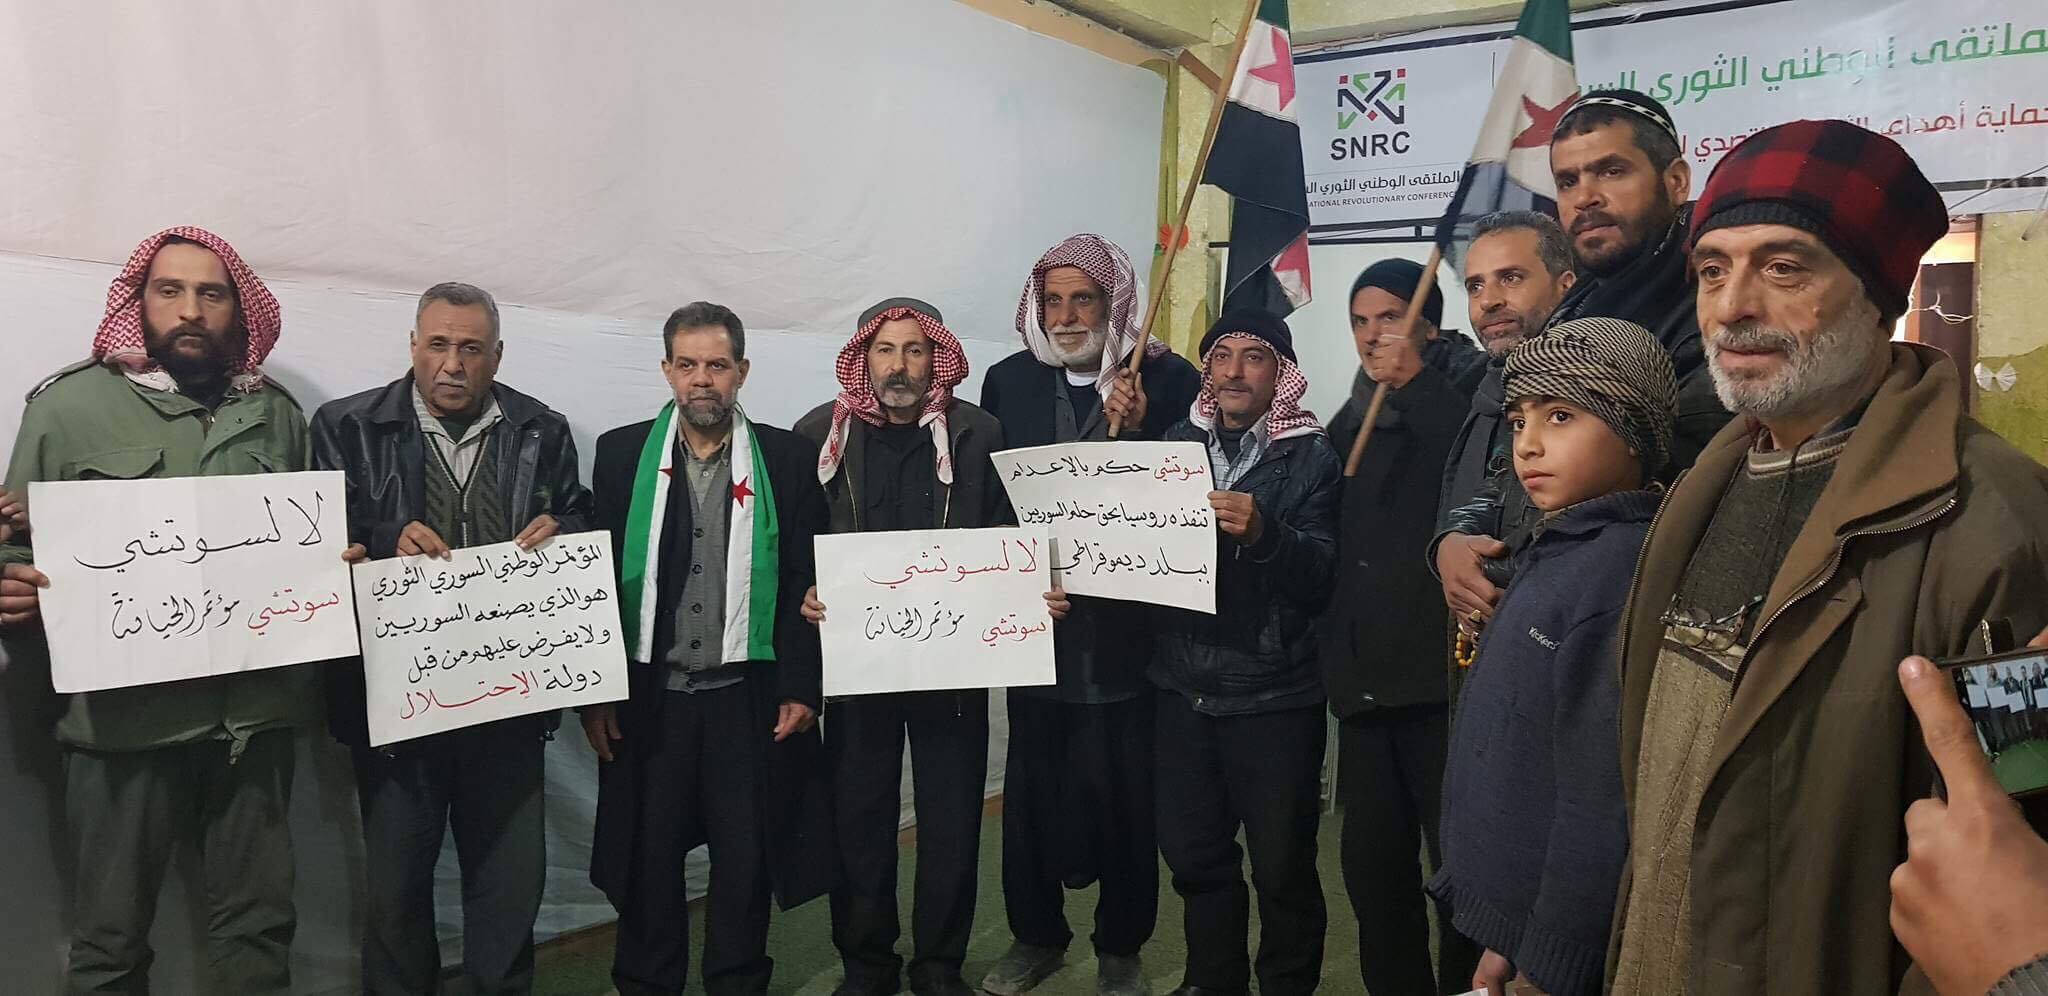 ملتقى وطني سوري ضد سوتشي في فرنسا والغوطة وإدلب